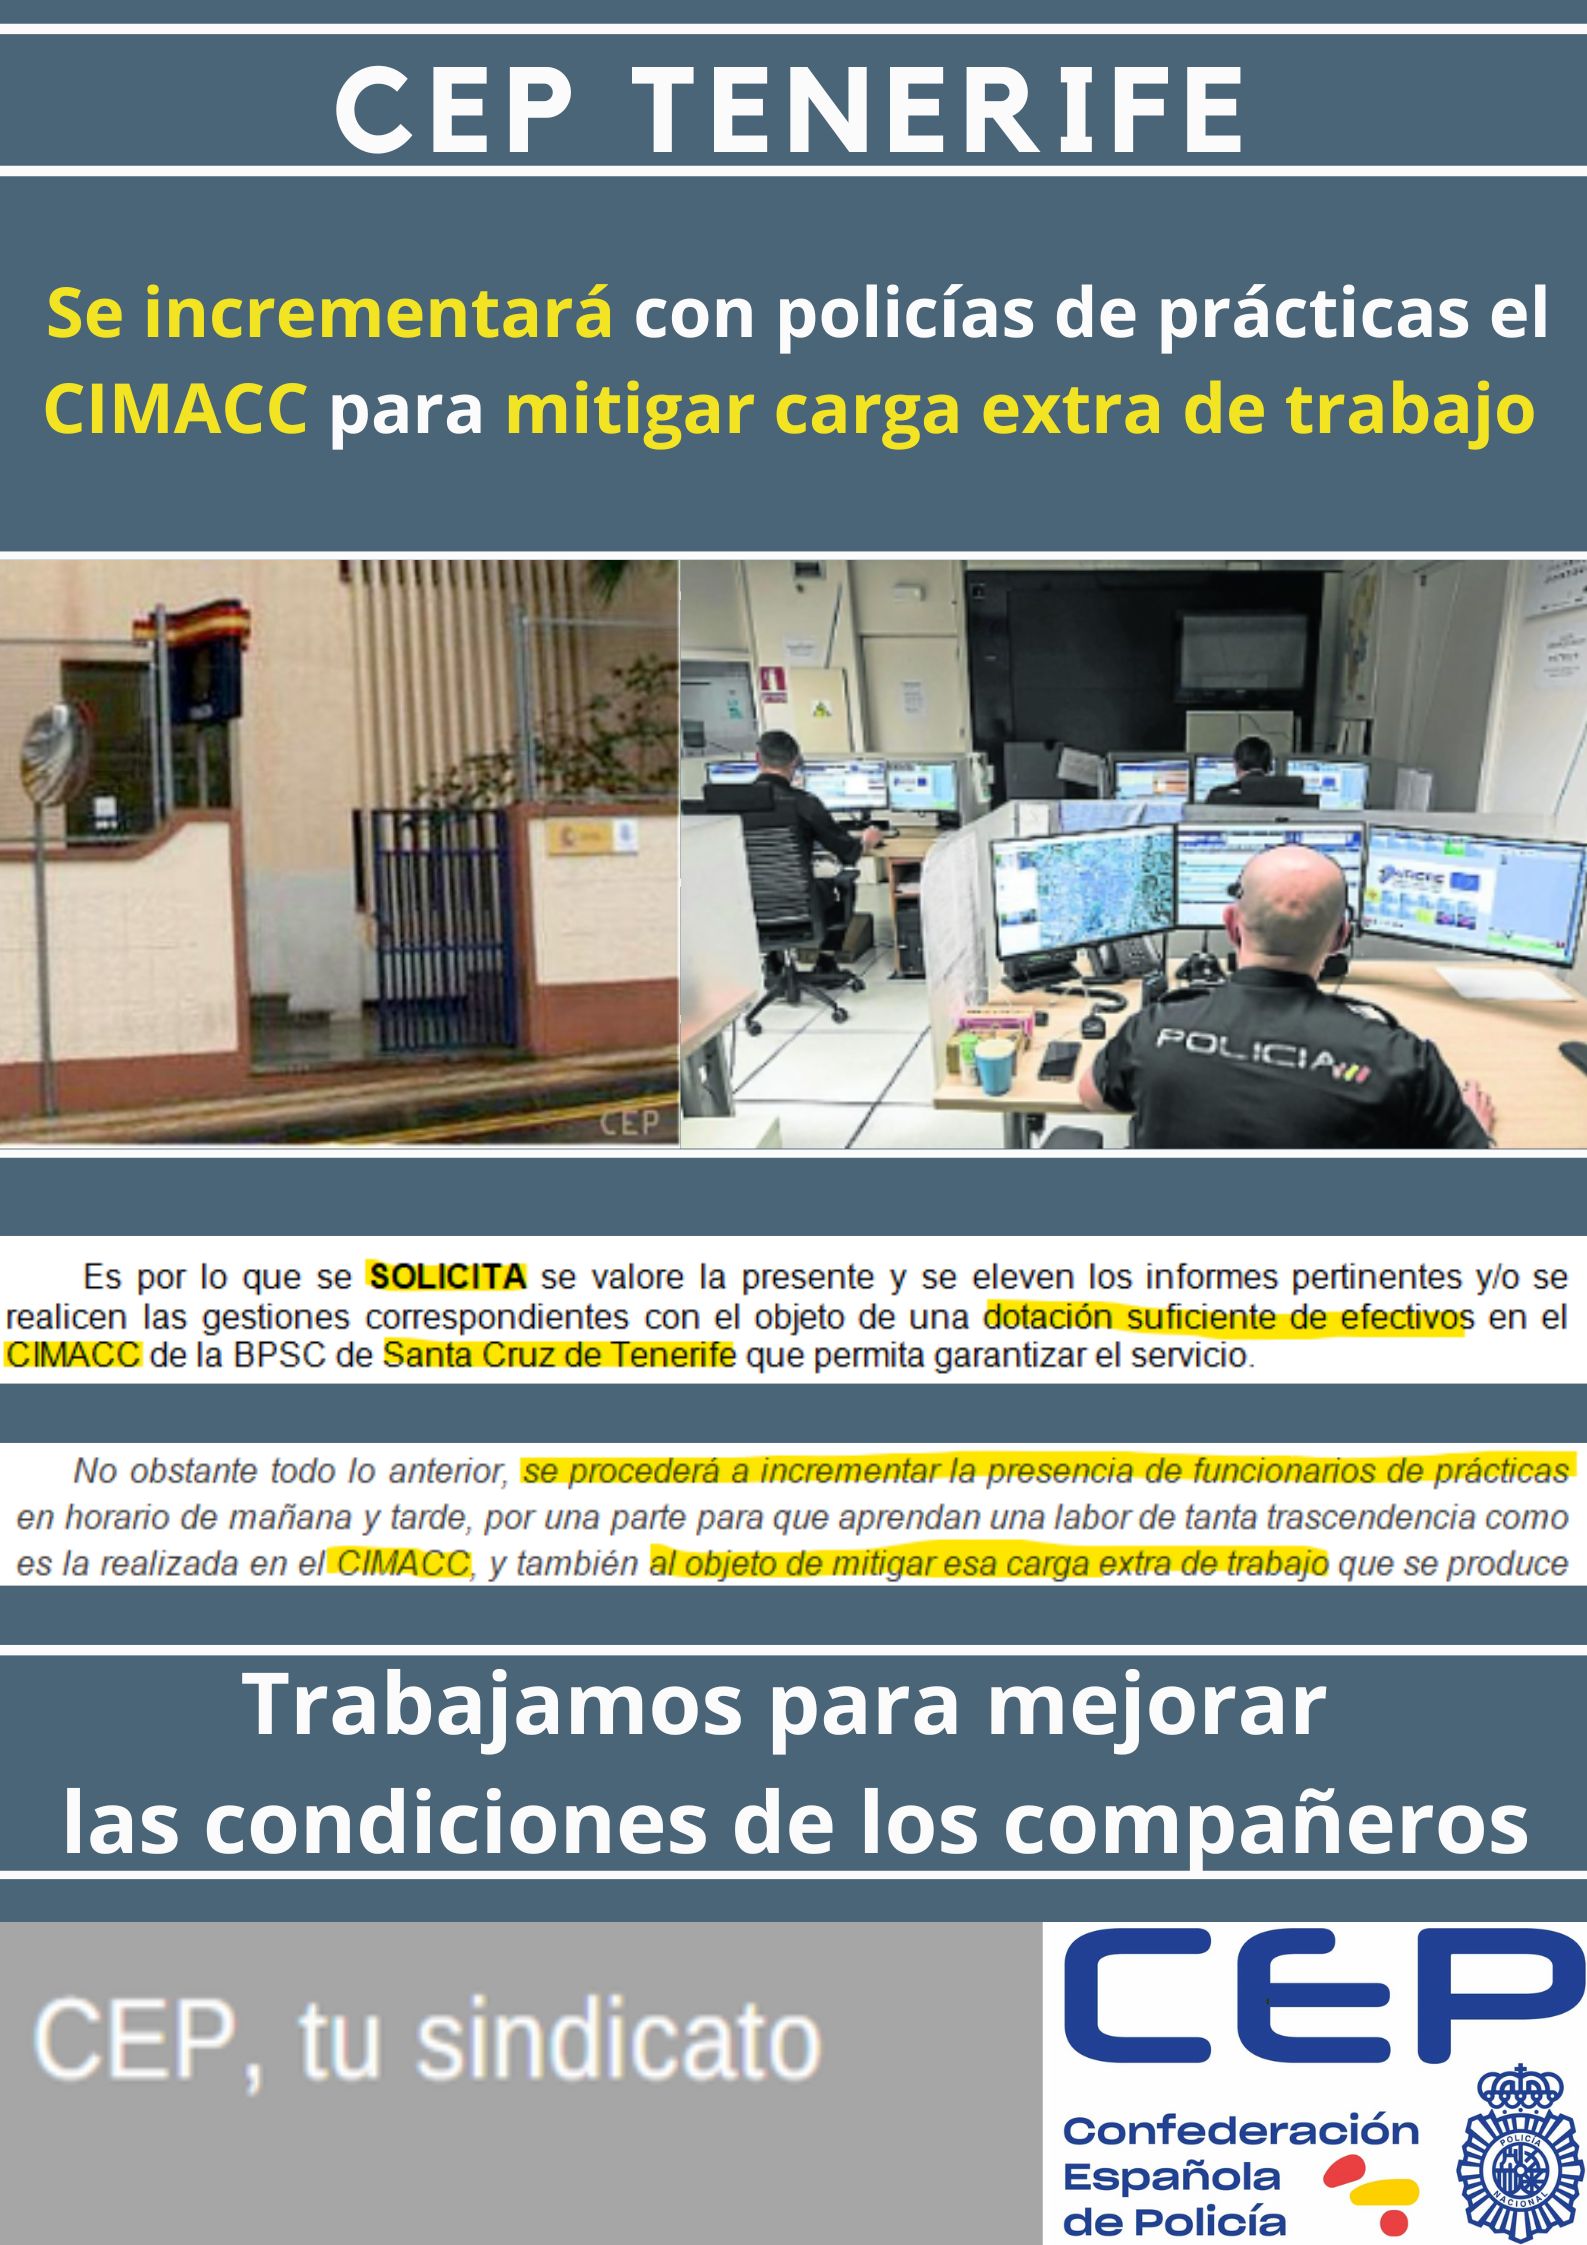 Tras petición CEP, se incrementará con policías de prácticas la Sala CIMACC 091